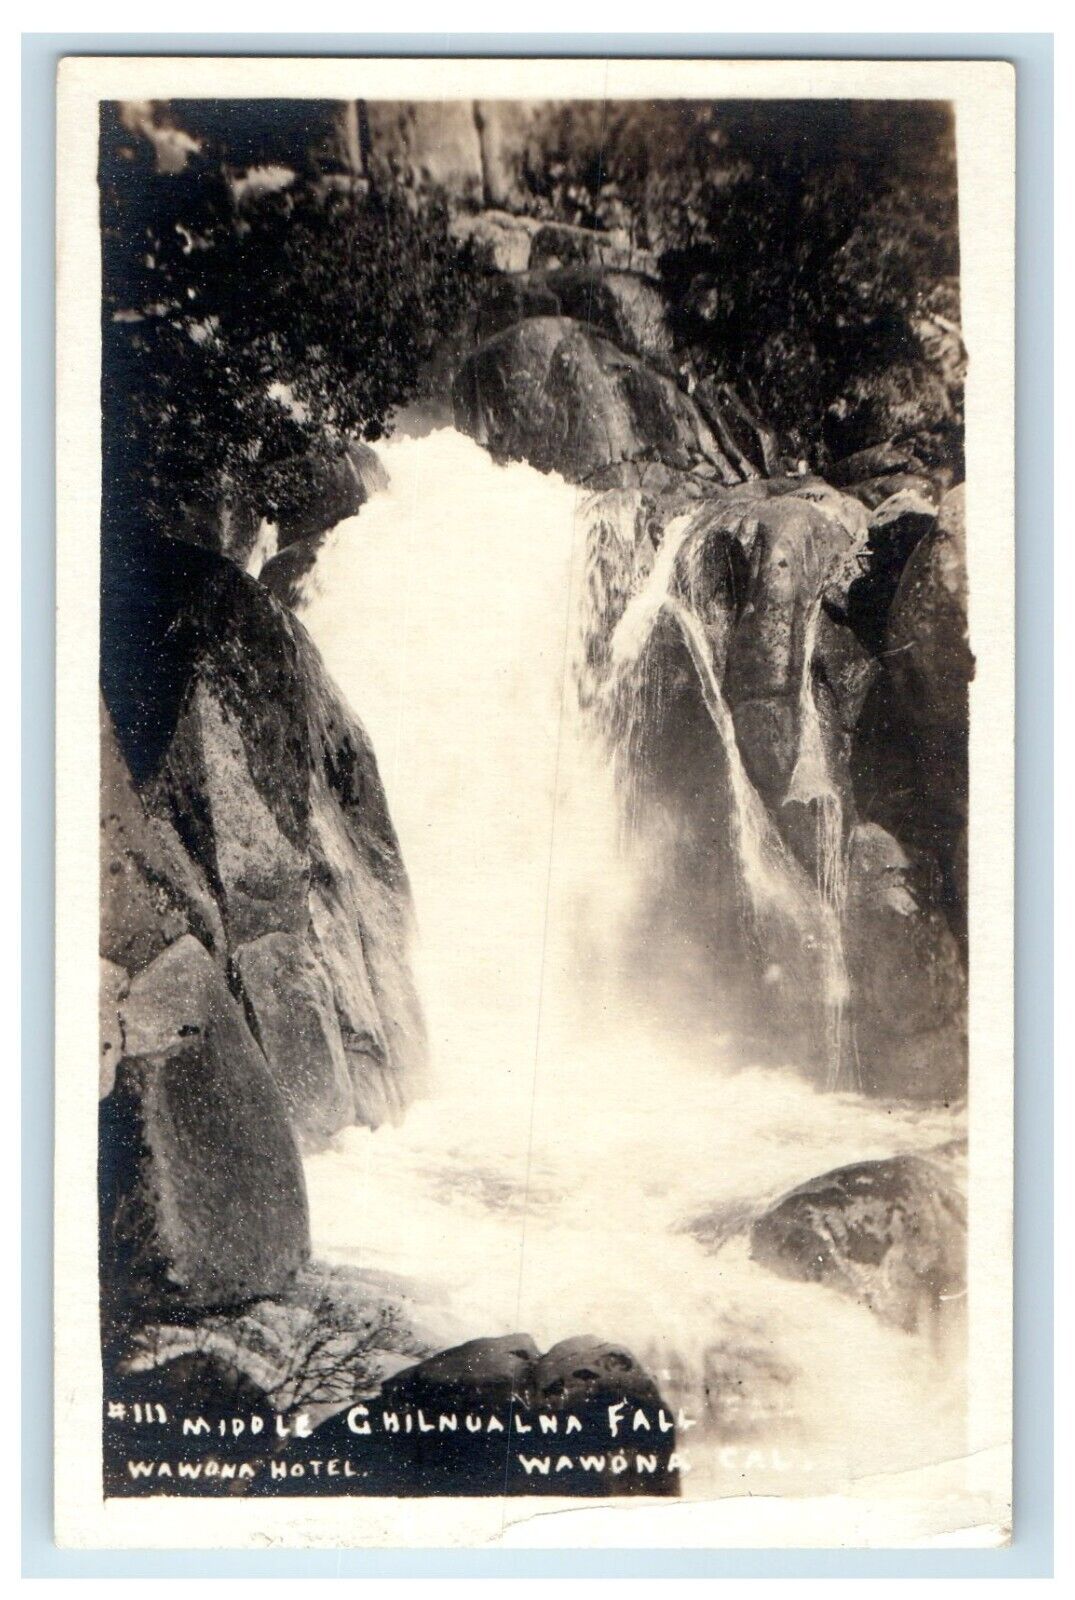 c1920's Middle Chilnualna Fall Yosemite National Park CA RPPC Photo Postcard